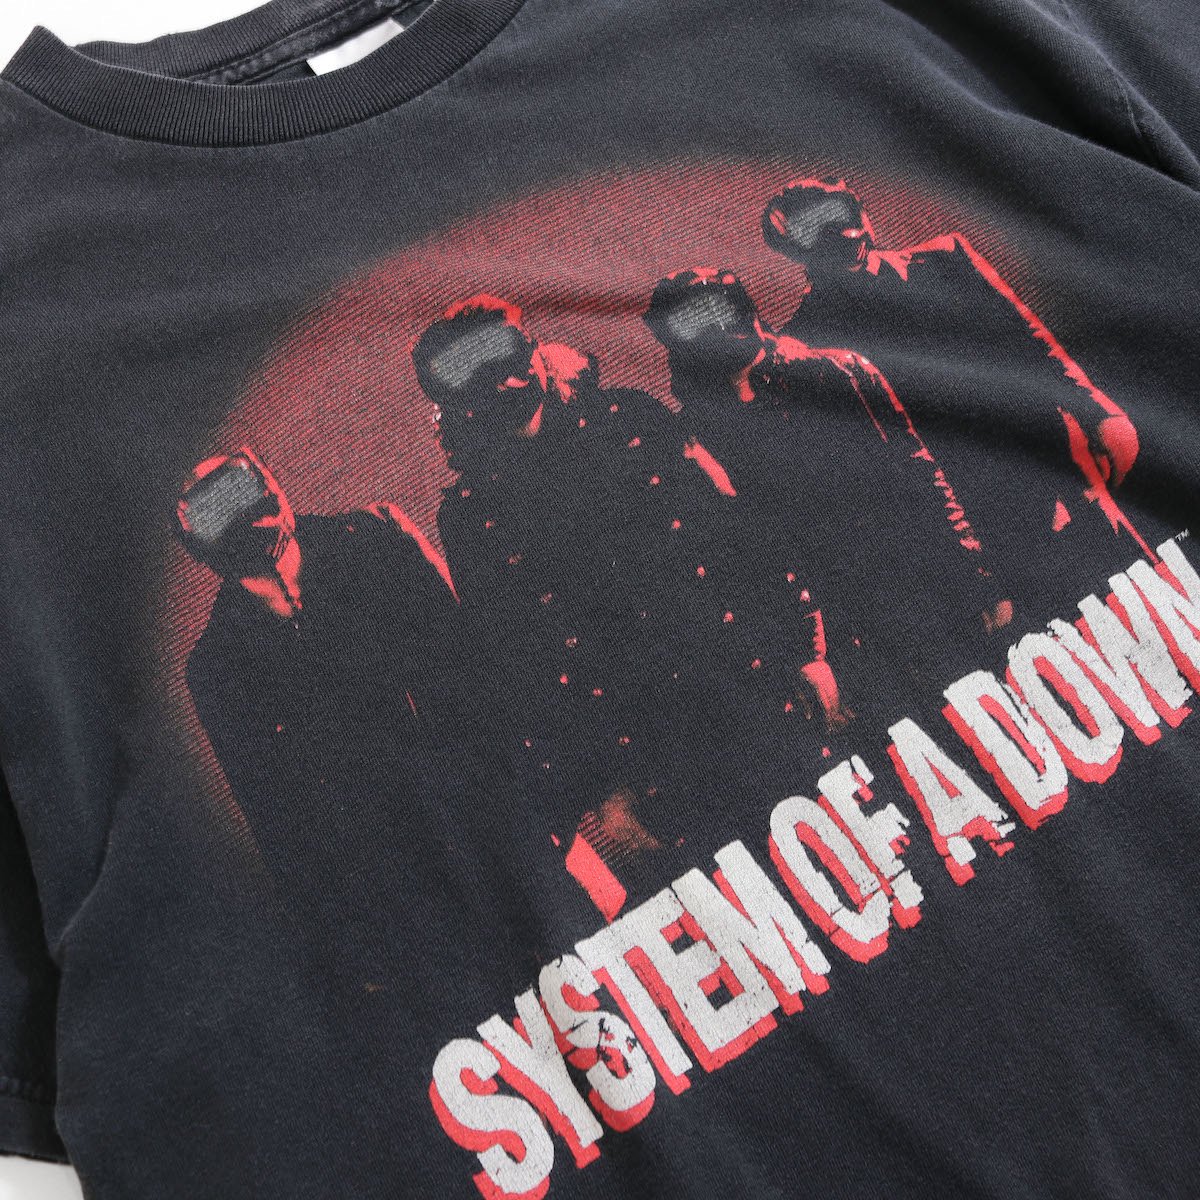 レディース] 1990s SYSTEM OF A DOWN バンドTシャツ ブラック